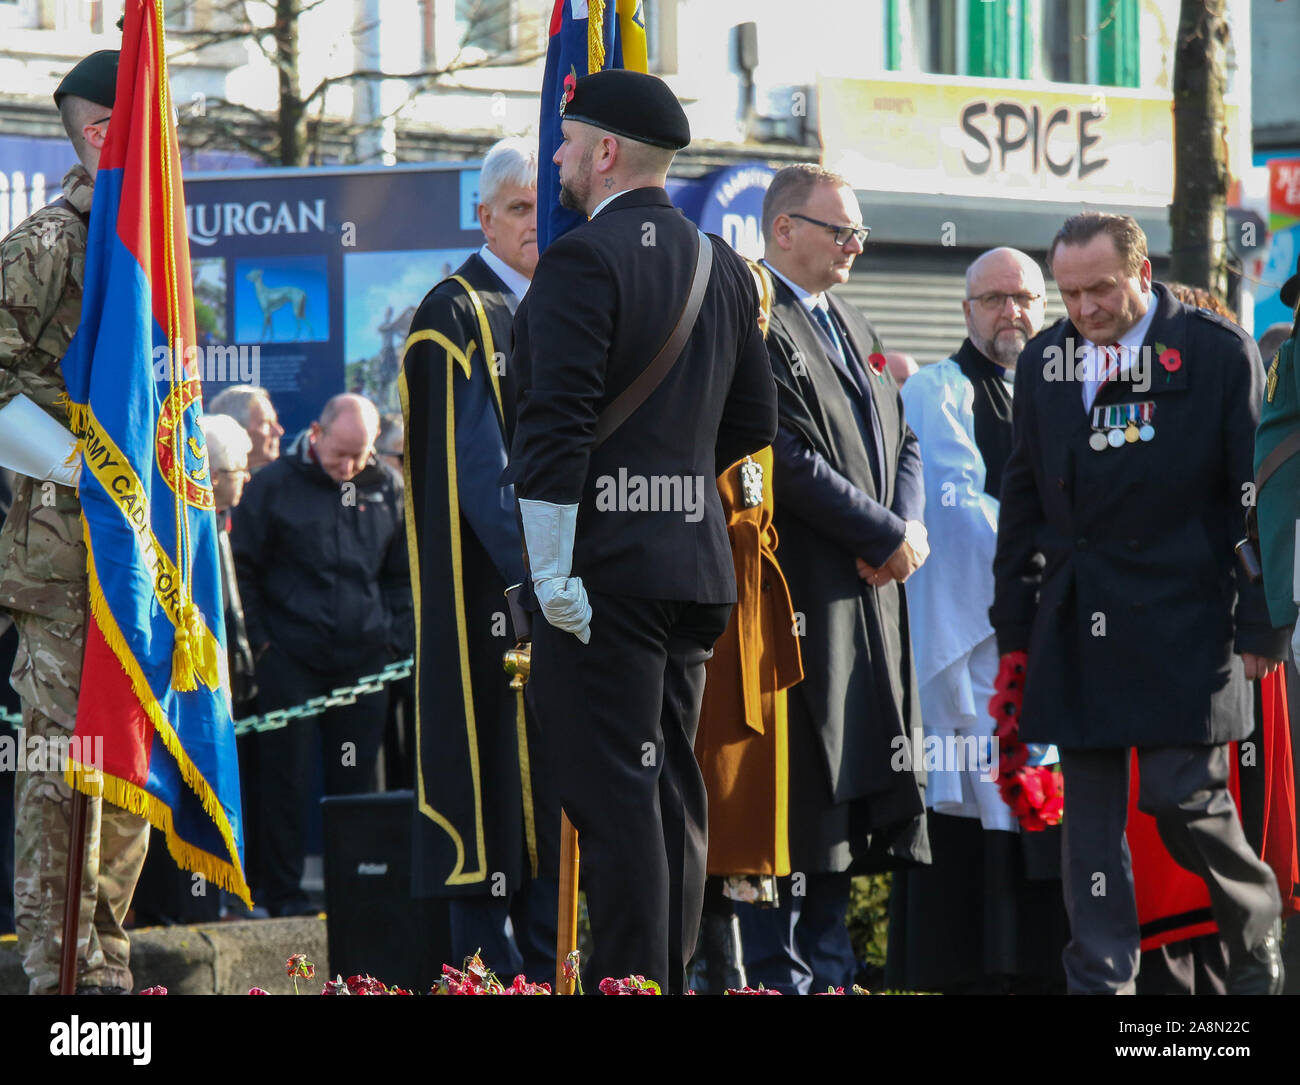 Lurgan, nella contea di Armagh, Irlanda del Nord, Regno Unito. 10 Nov 2019. Ricordo domenica presso la War Memorial in Lurgan. Credito: CAZIMB/Alamy Live News. Foto Stock